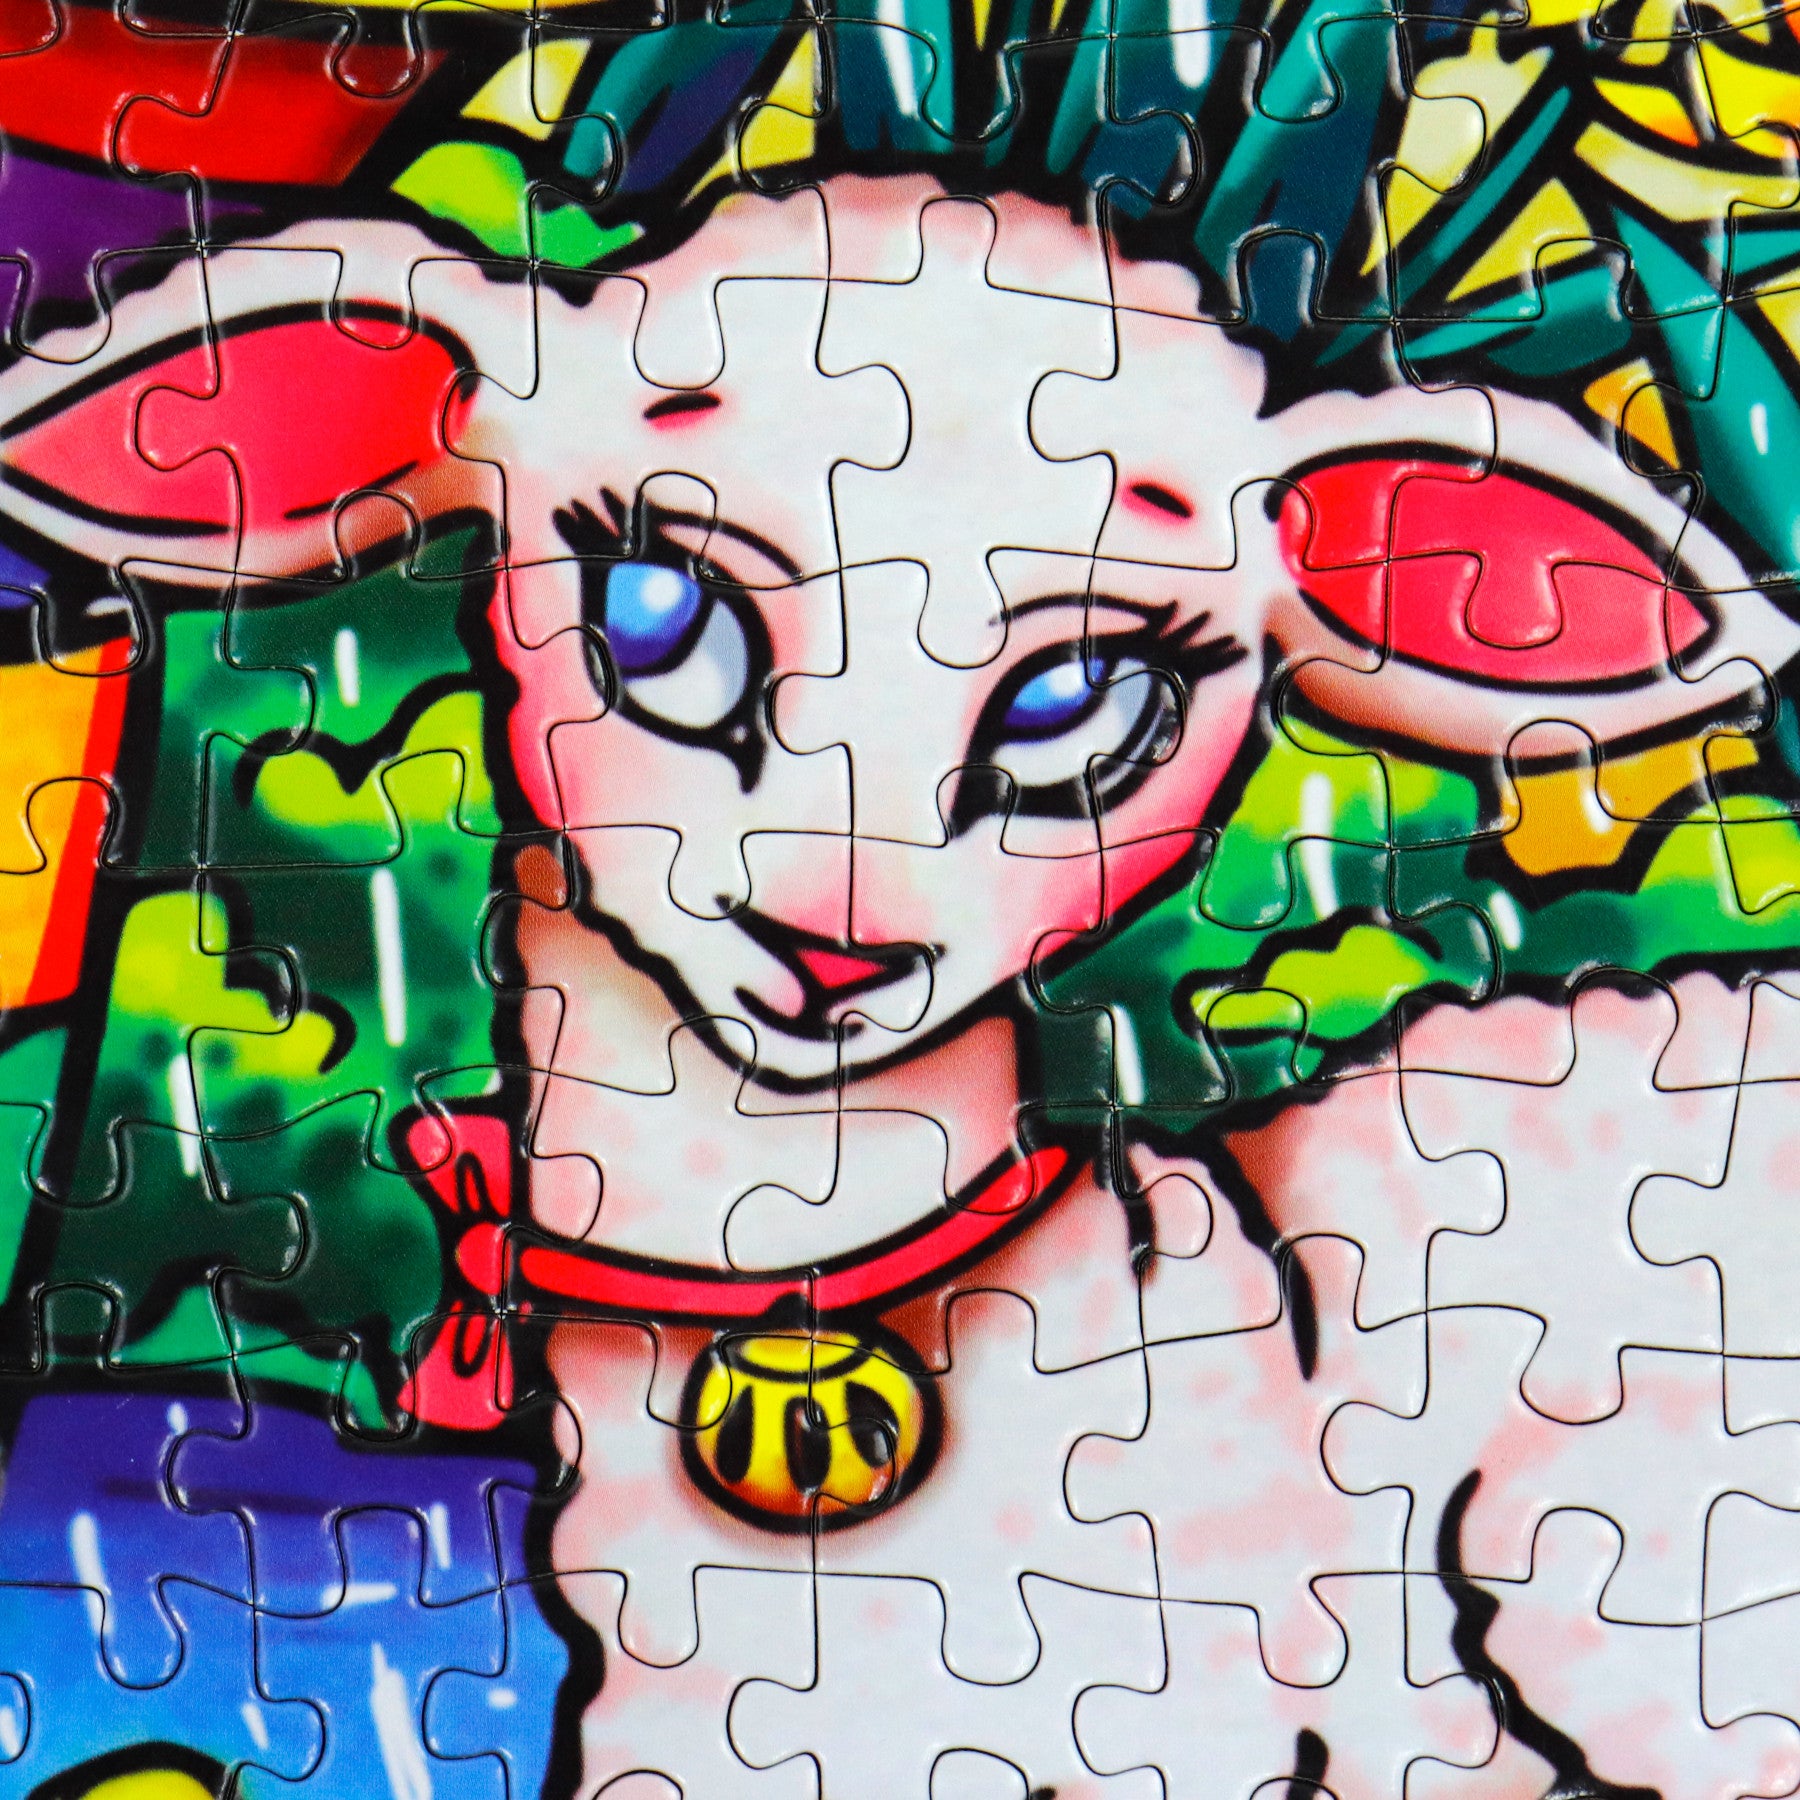  Puzzle - RAINY DAY